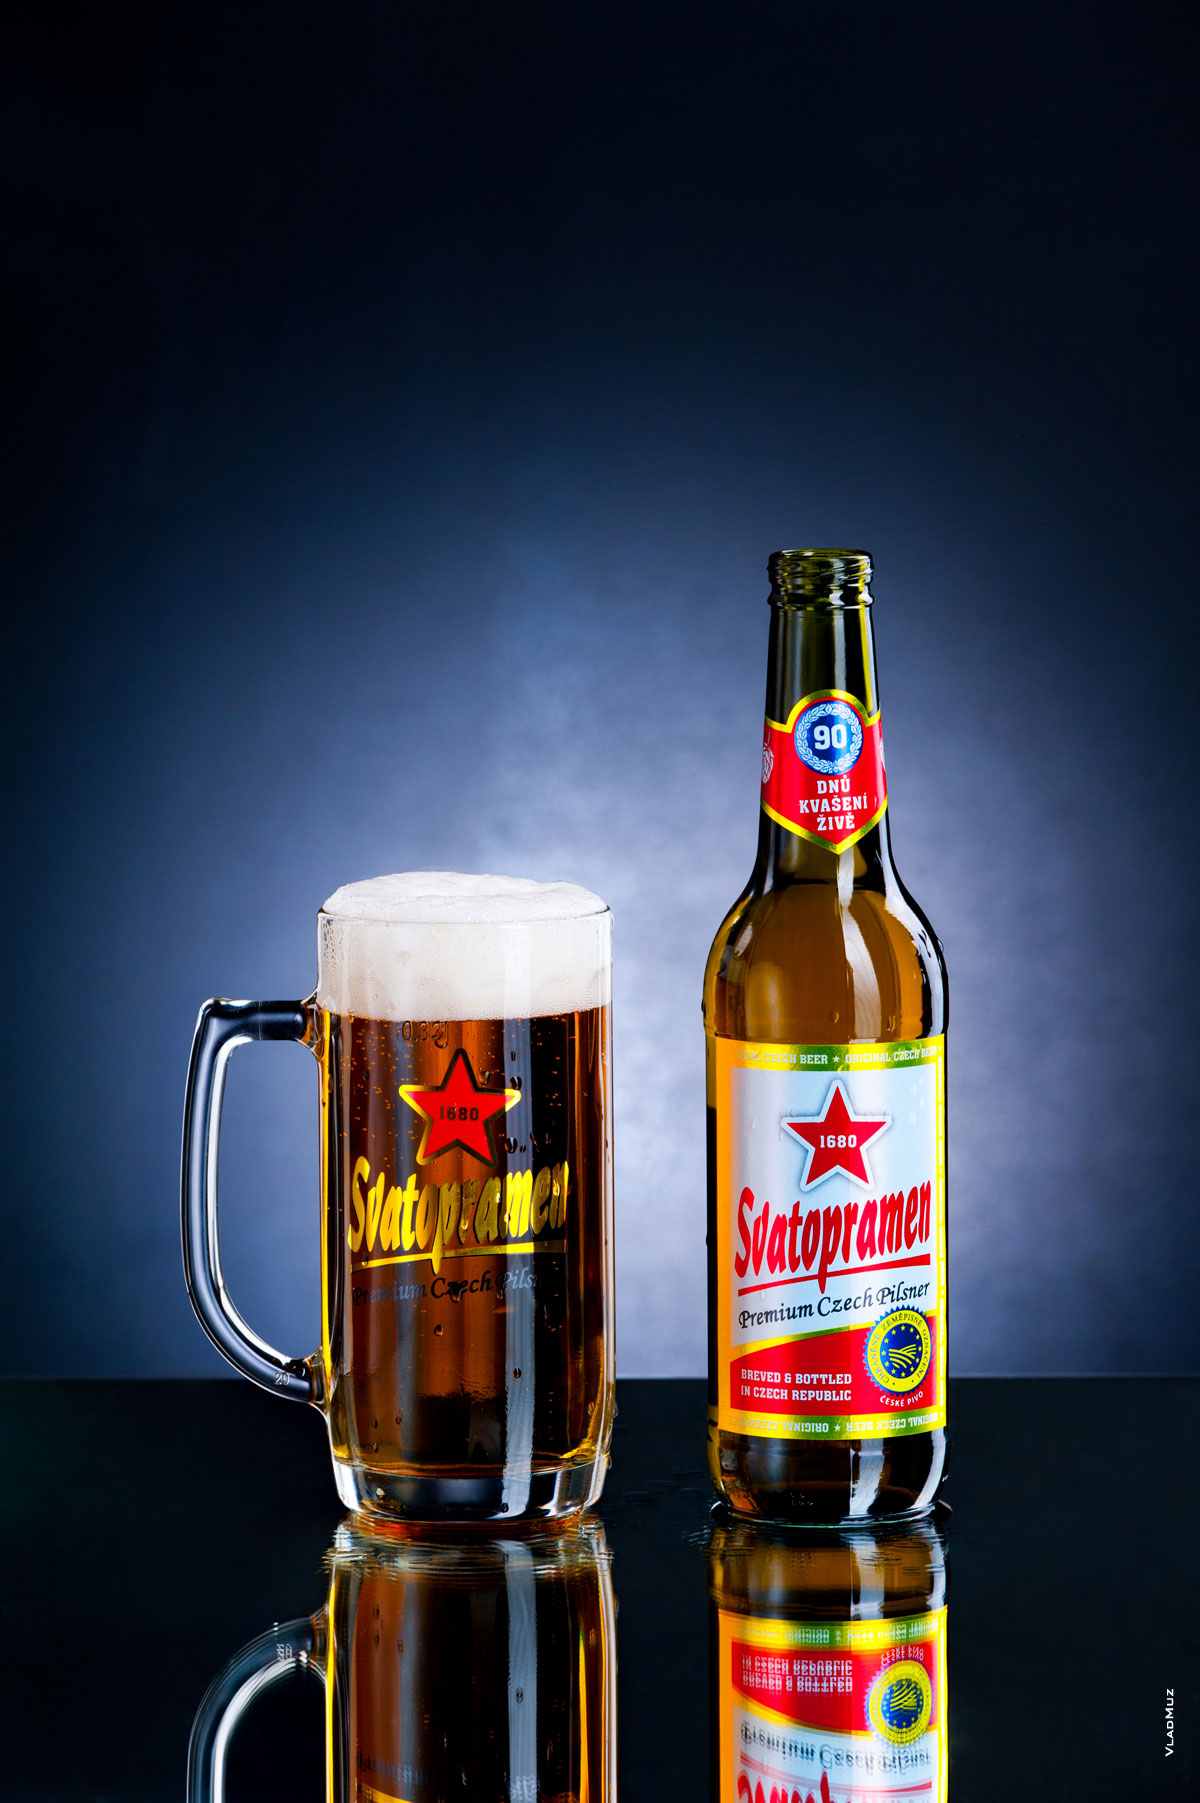 Фото бокала с пивом и бутылки пива «Святопрамен» на темно-синем фоне